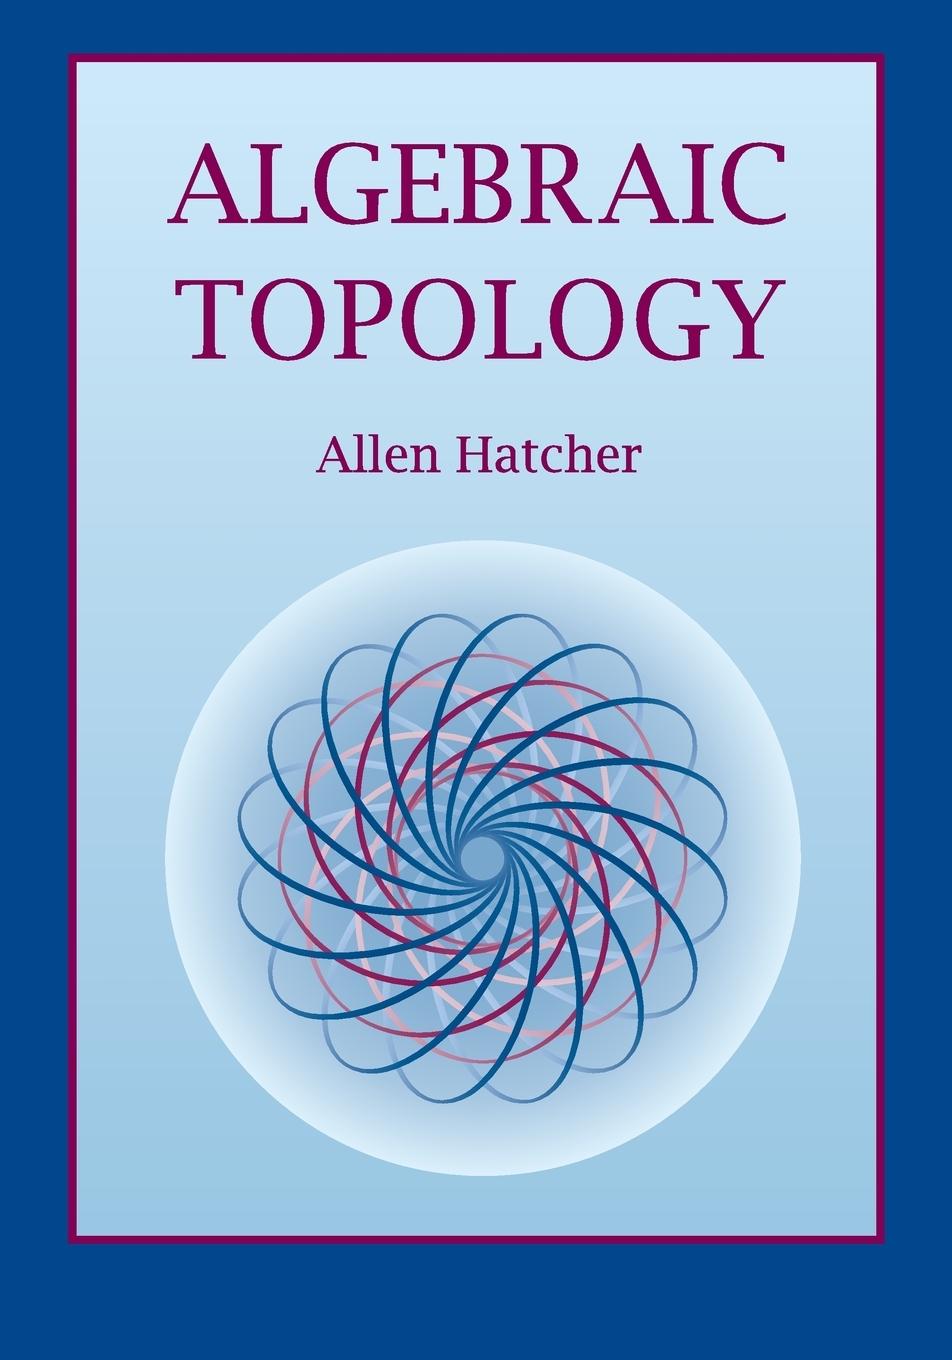 Algebraic Topology / Allen Hatcher / Taschenbuch / Kartoniert / Broschiert / Englisch / 2001 / Cambridge University Pr. / EAN 9780521795401 - Hatcher, Allen